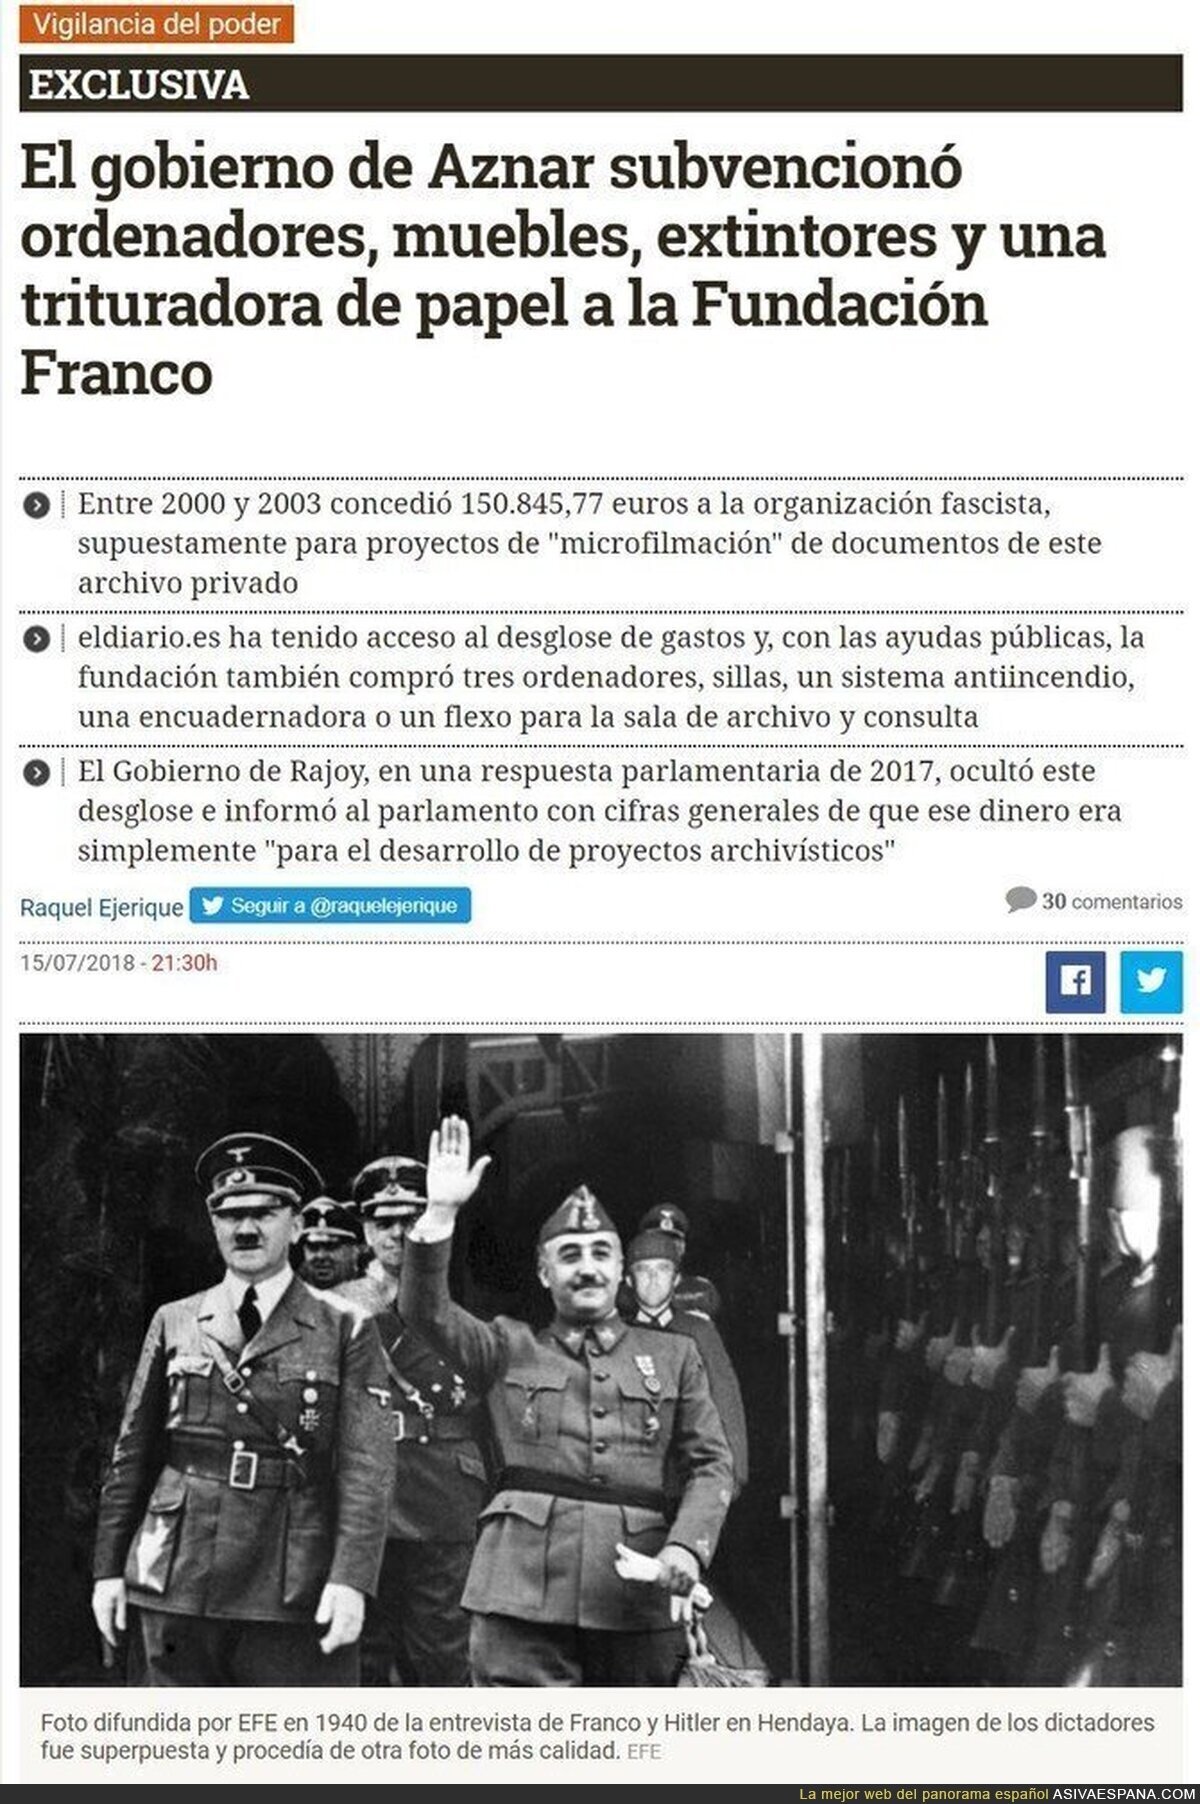 El PP financiando a la fundación Francisco Franco...